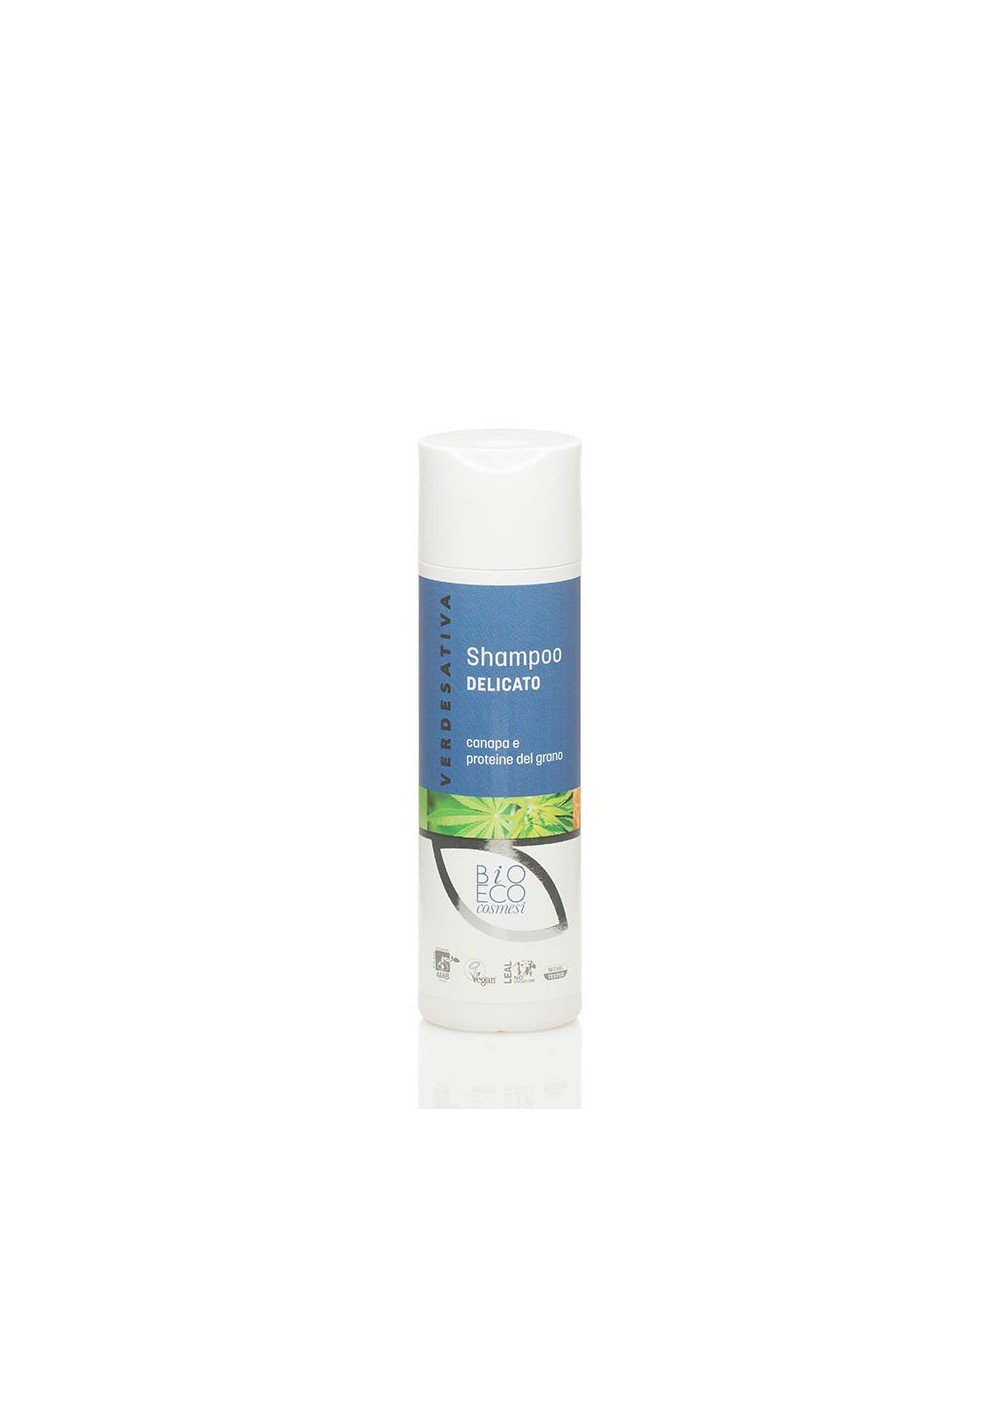 Shampoo Delicato Canapa e Proteine del Grano ml200 - Verdesativa Bagno Doccia